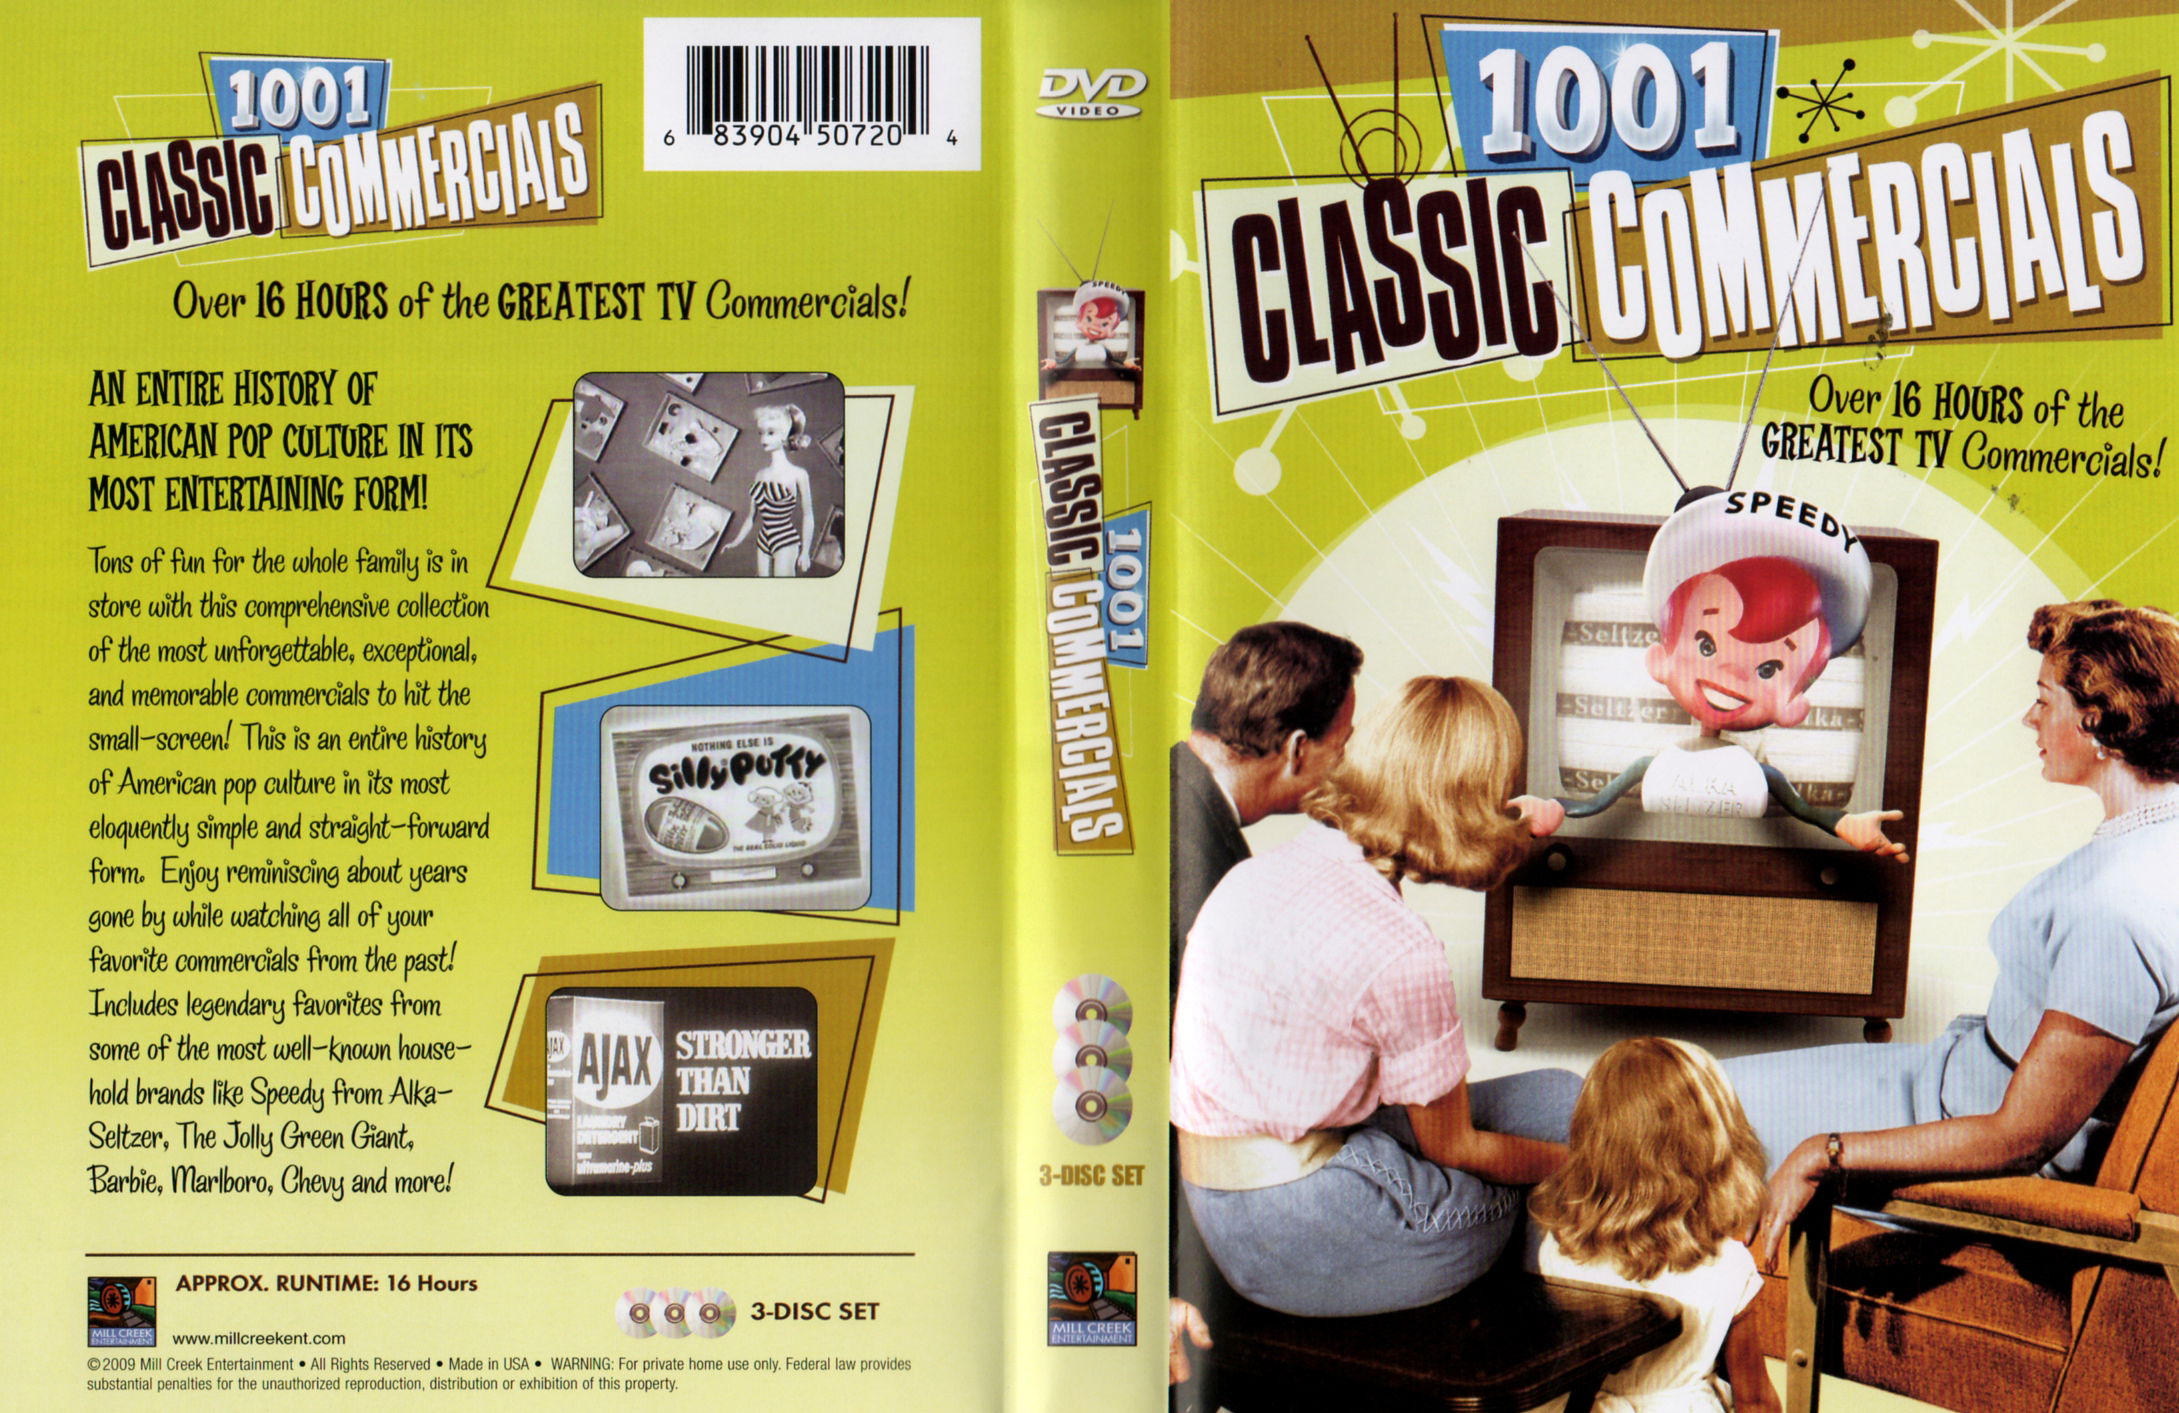 Jaquette DVD 1001 classics commercials